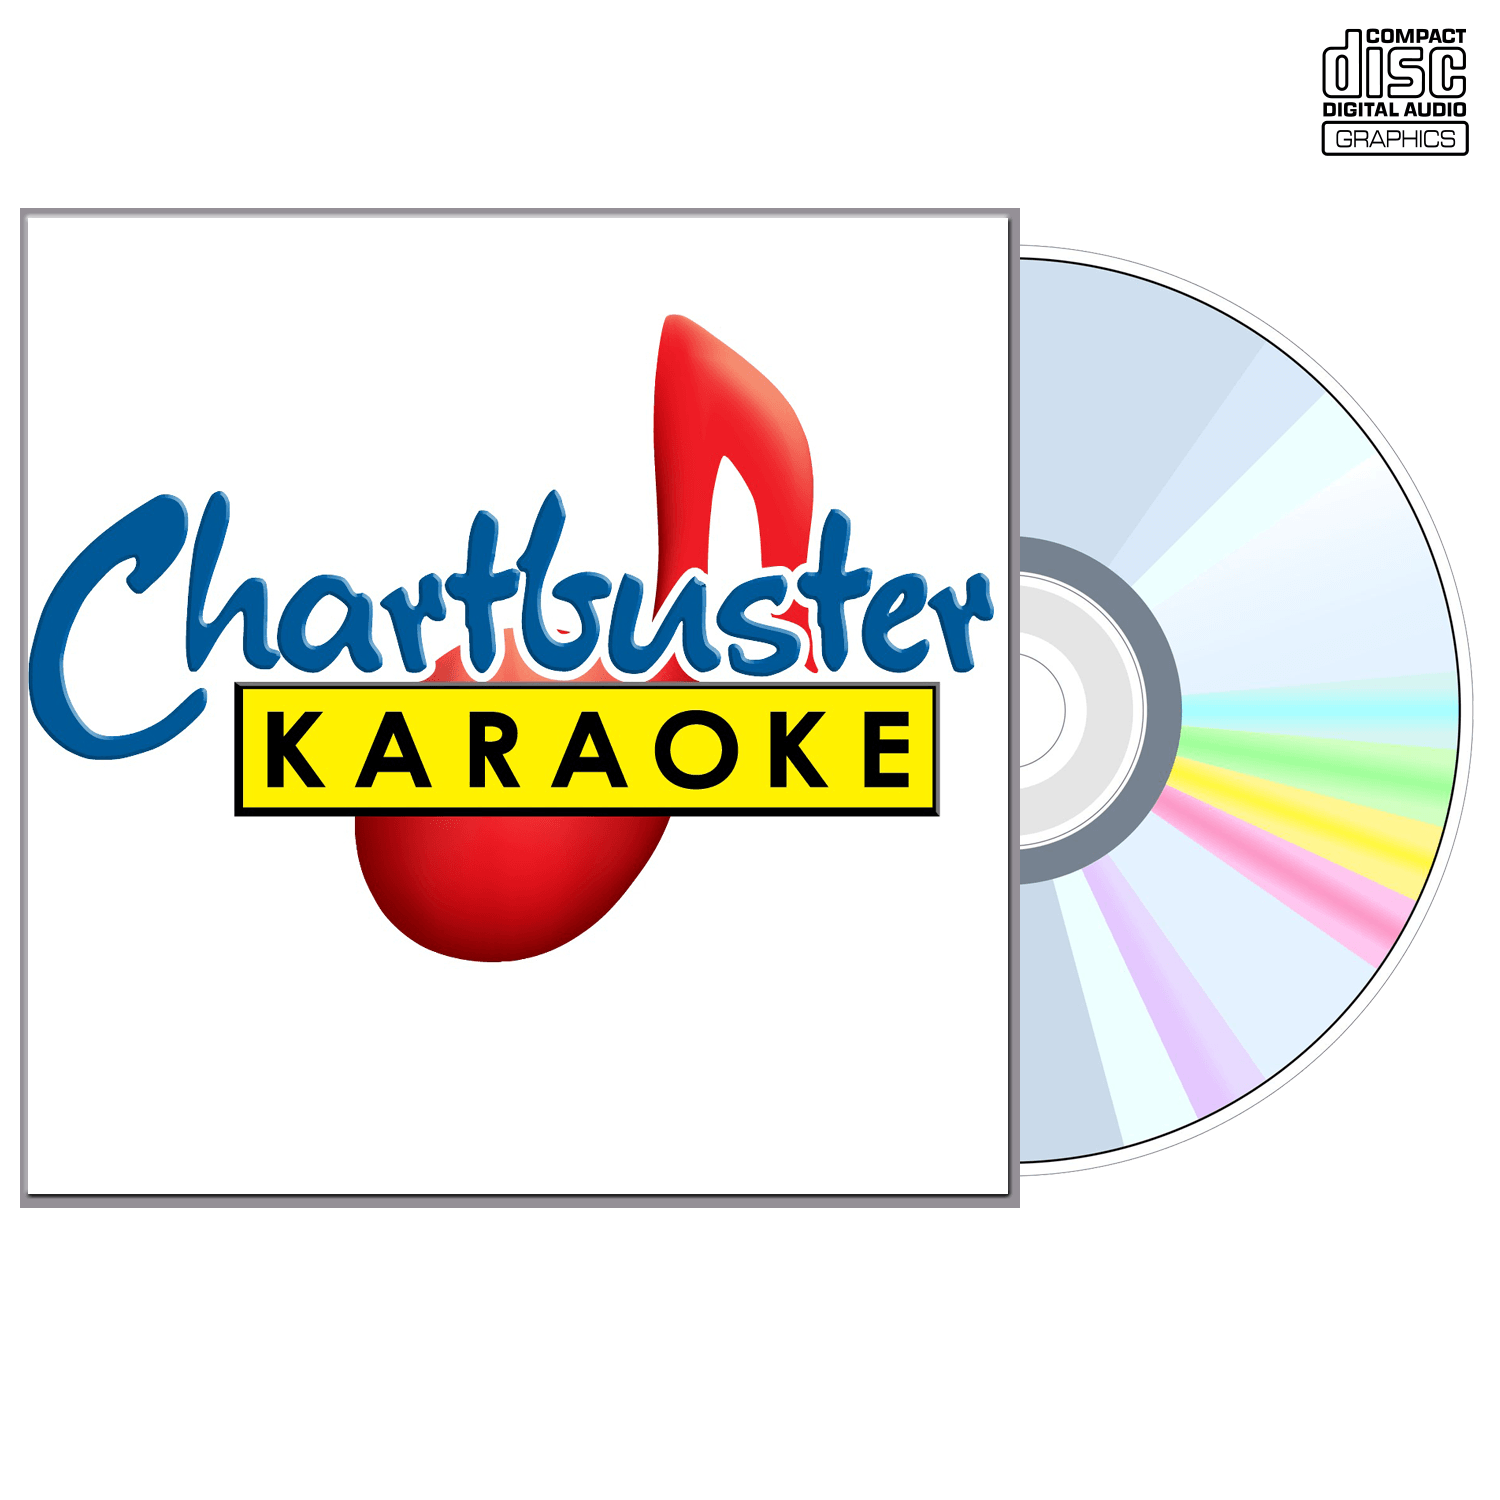 The Fray - CD+G - Chartbuster Karaoke - Karaoke Home Entertainment